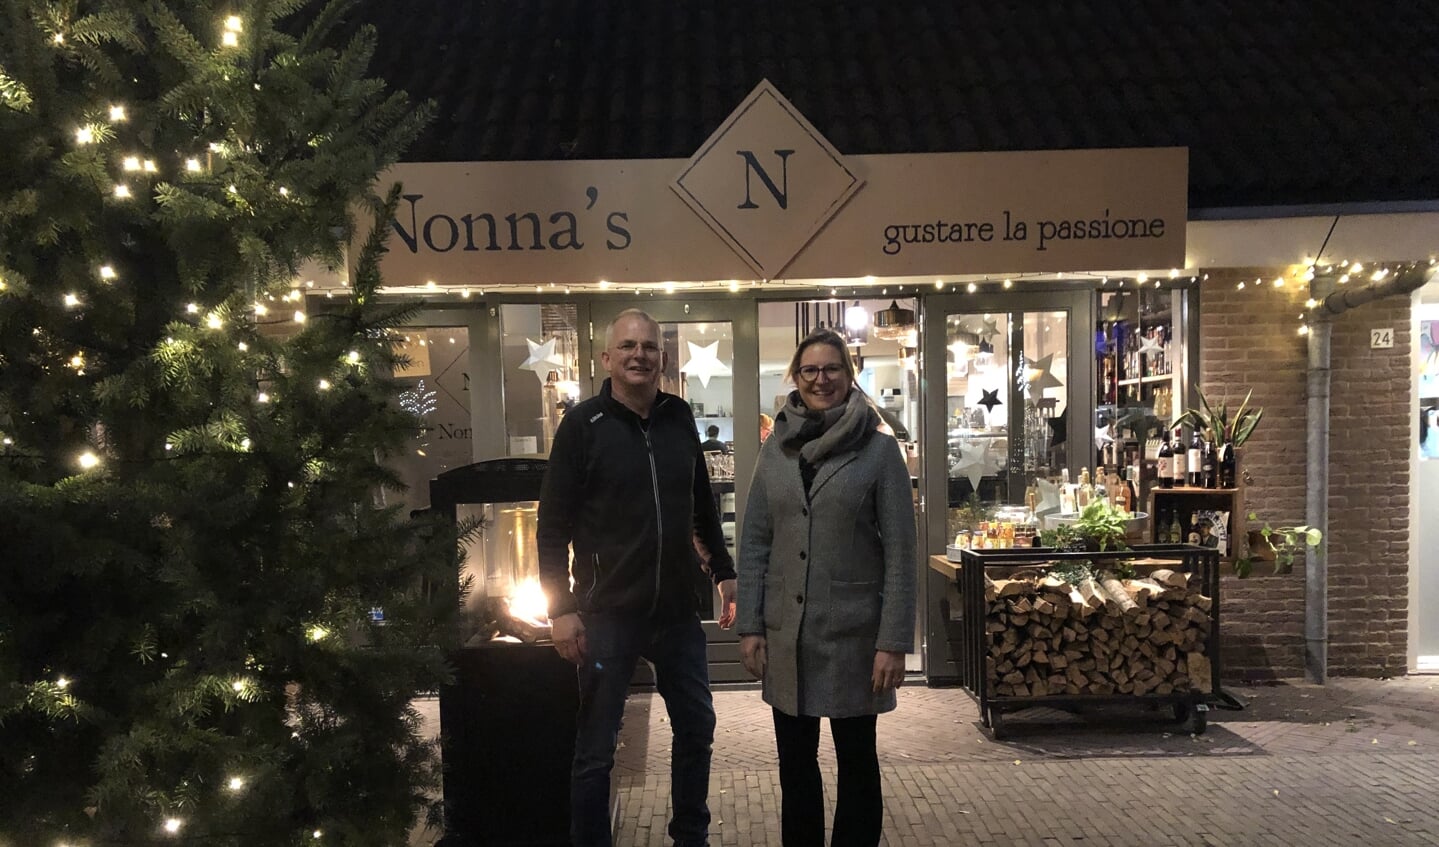 Ruth van Veldhuizen en Gert van Leeuwen, Bestuursleden van de Doornse Winkels doen een oproep lokaal te kopen, zodat het dorp levendig blijft. 